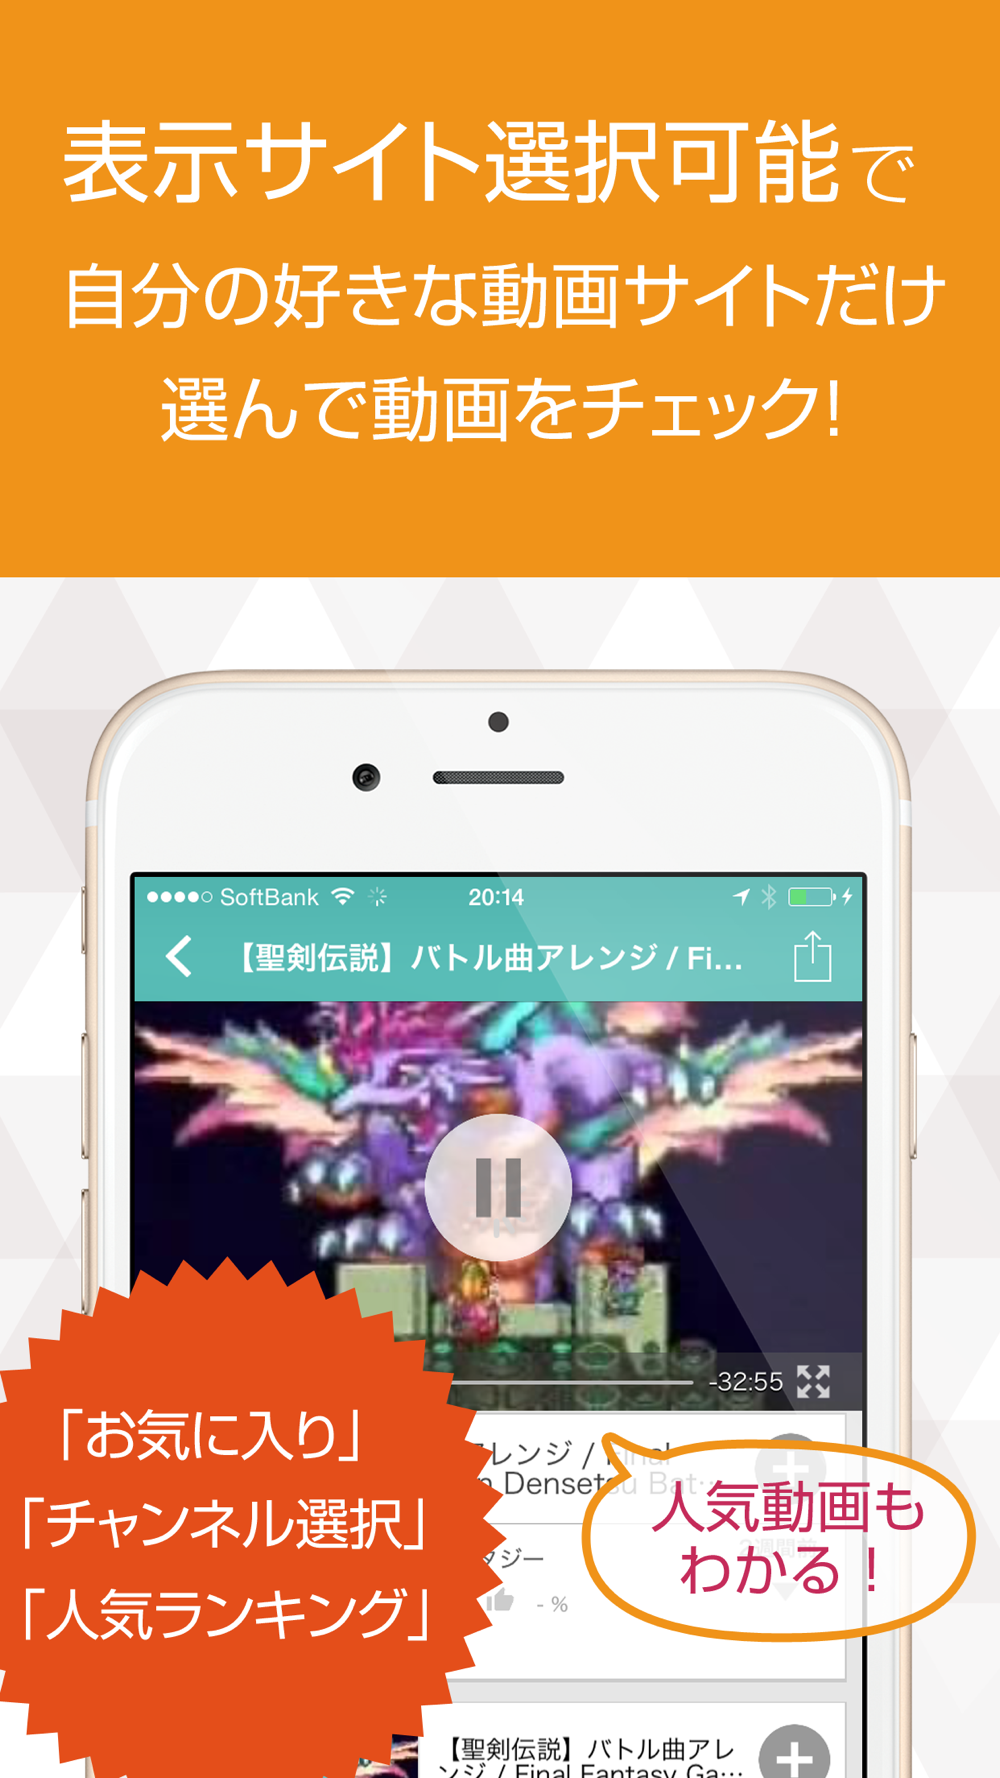 作業用bgm For ゲーム音楽 Free Download App For Iphone Steprimo Com